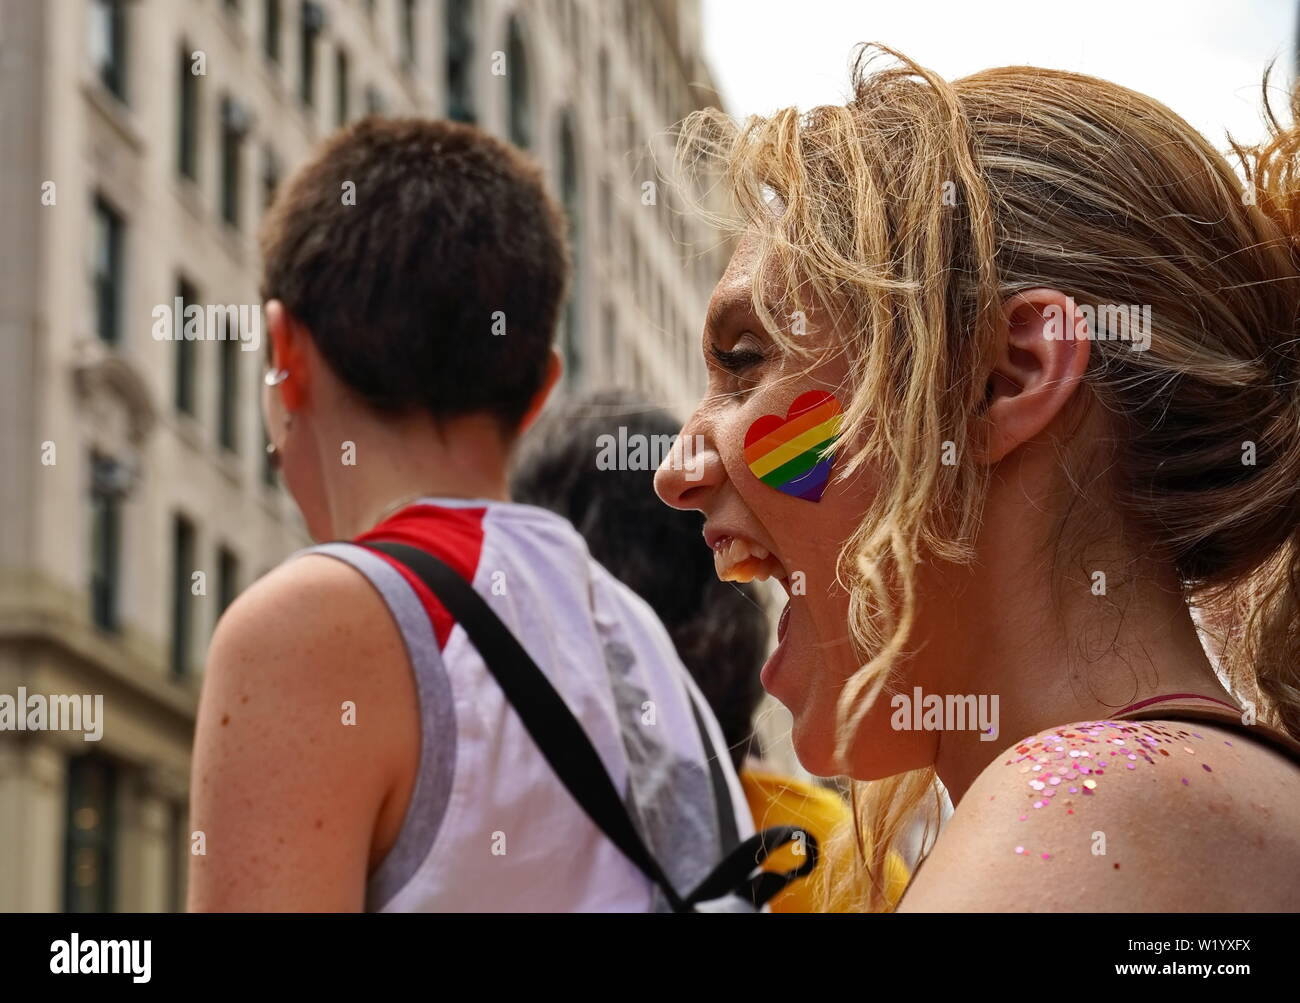 New York City, NY / USA - 20 juin 2019 : Jeune femme avec un coeur rainbow sticker montre un sourire joyeux Banque D'Images